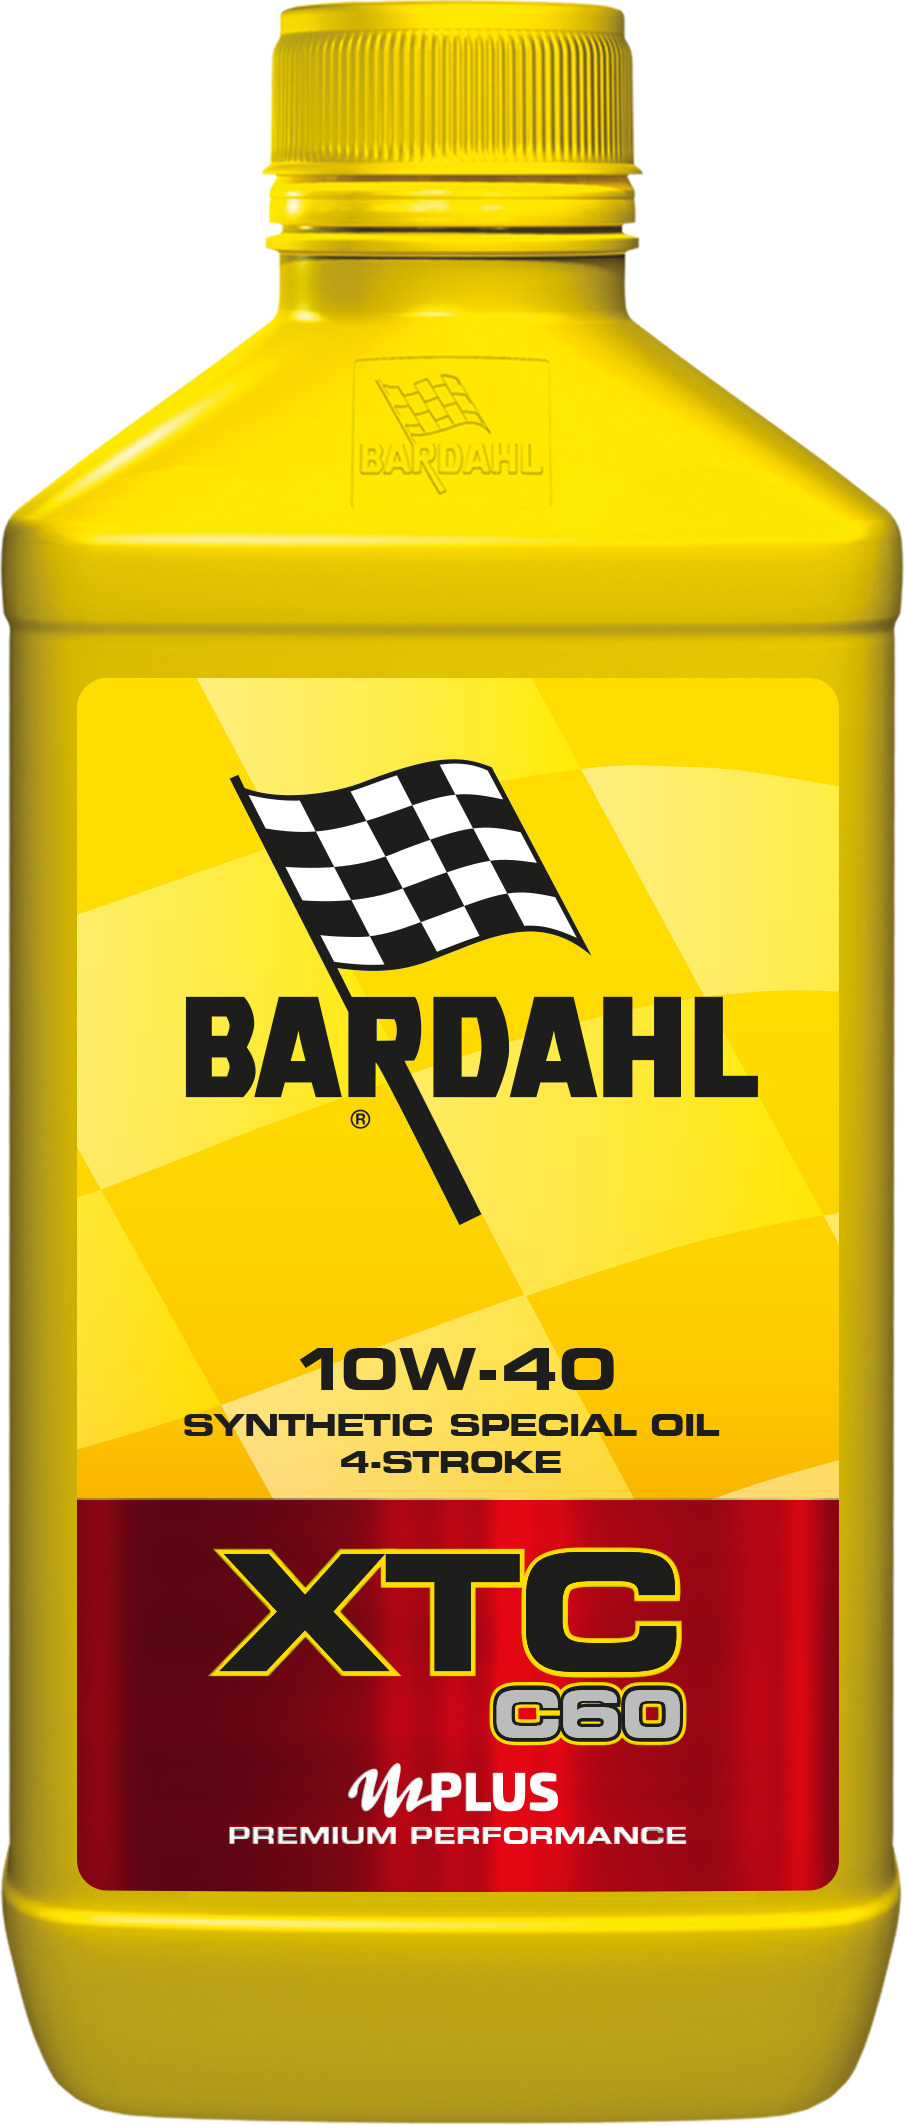 Bardahl xtc c60 5w-40. Bardahl 10w50 Moto. Бардаль 5w40 синтетика. Масло Bardahl 10w4. Артикул масло бардаль